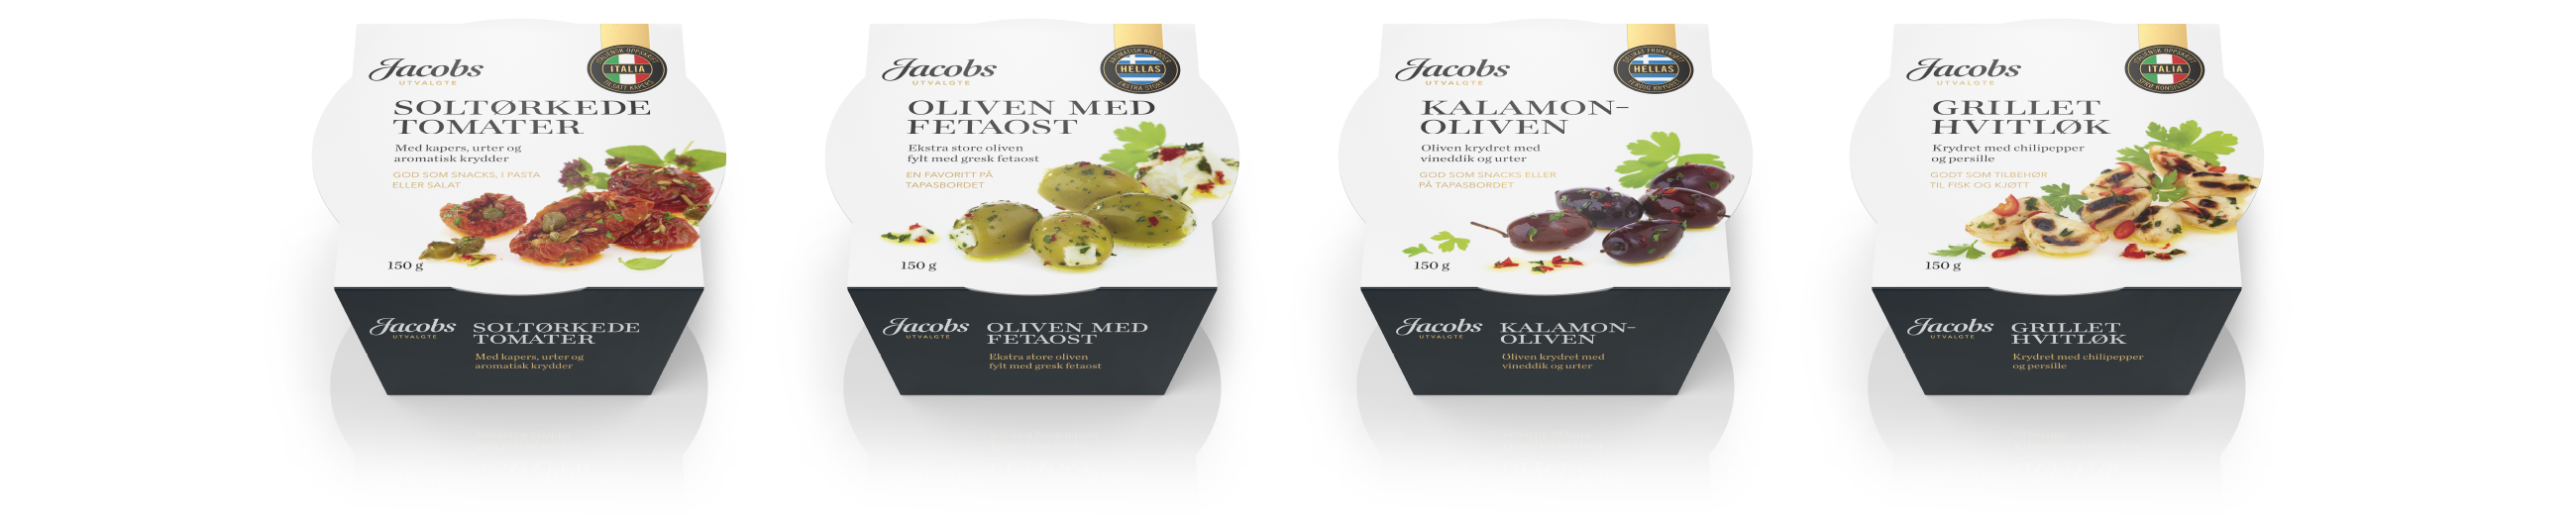 Jacobs Utvalgte produkter Soltørkede Tomater, Oliven med Fetaost, Kalamonoliven og Grillet Hvitløk. Emballasje packaging design.